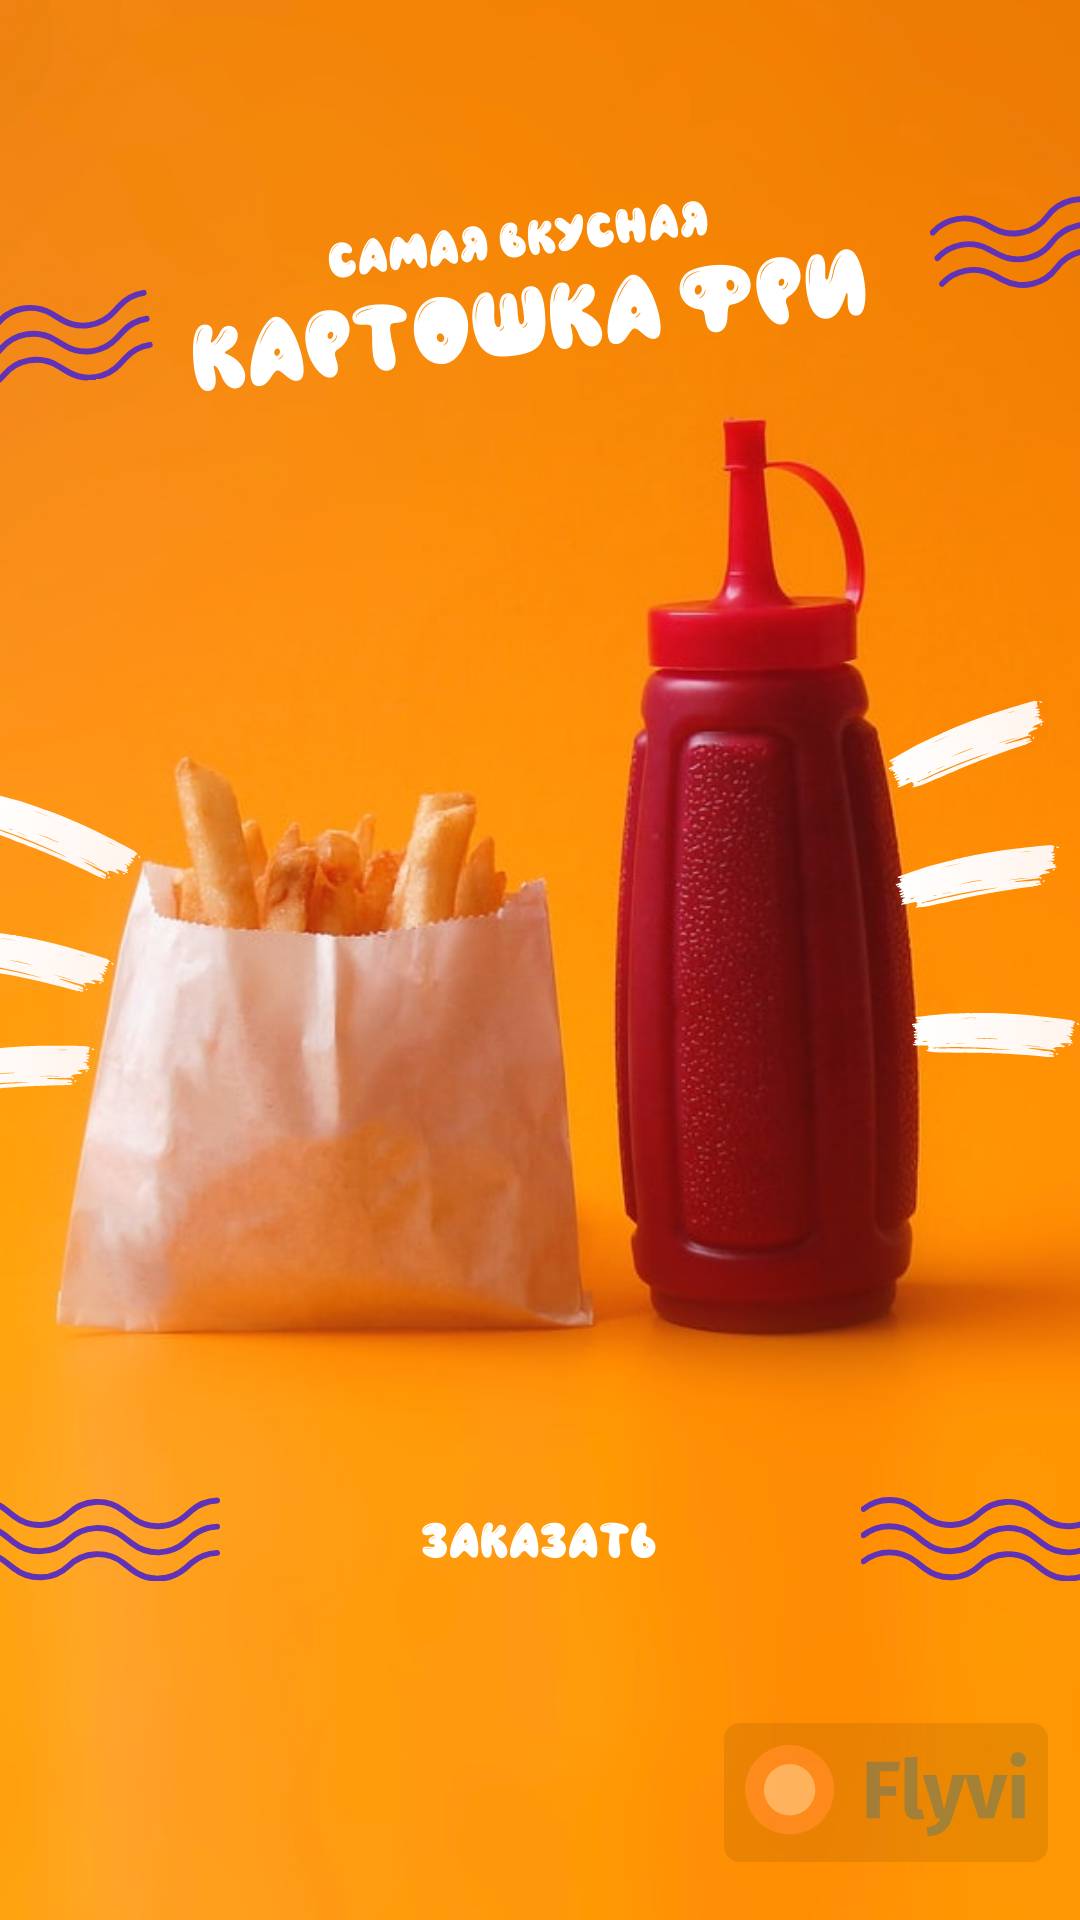 Невероятный оранжевый сторис Самая вкусная картошка фри с кетчупом и кнопкой быстрого заказа для быстрого привлечения новых клиентов в ресторан